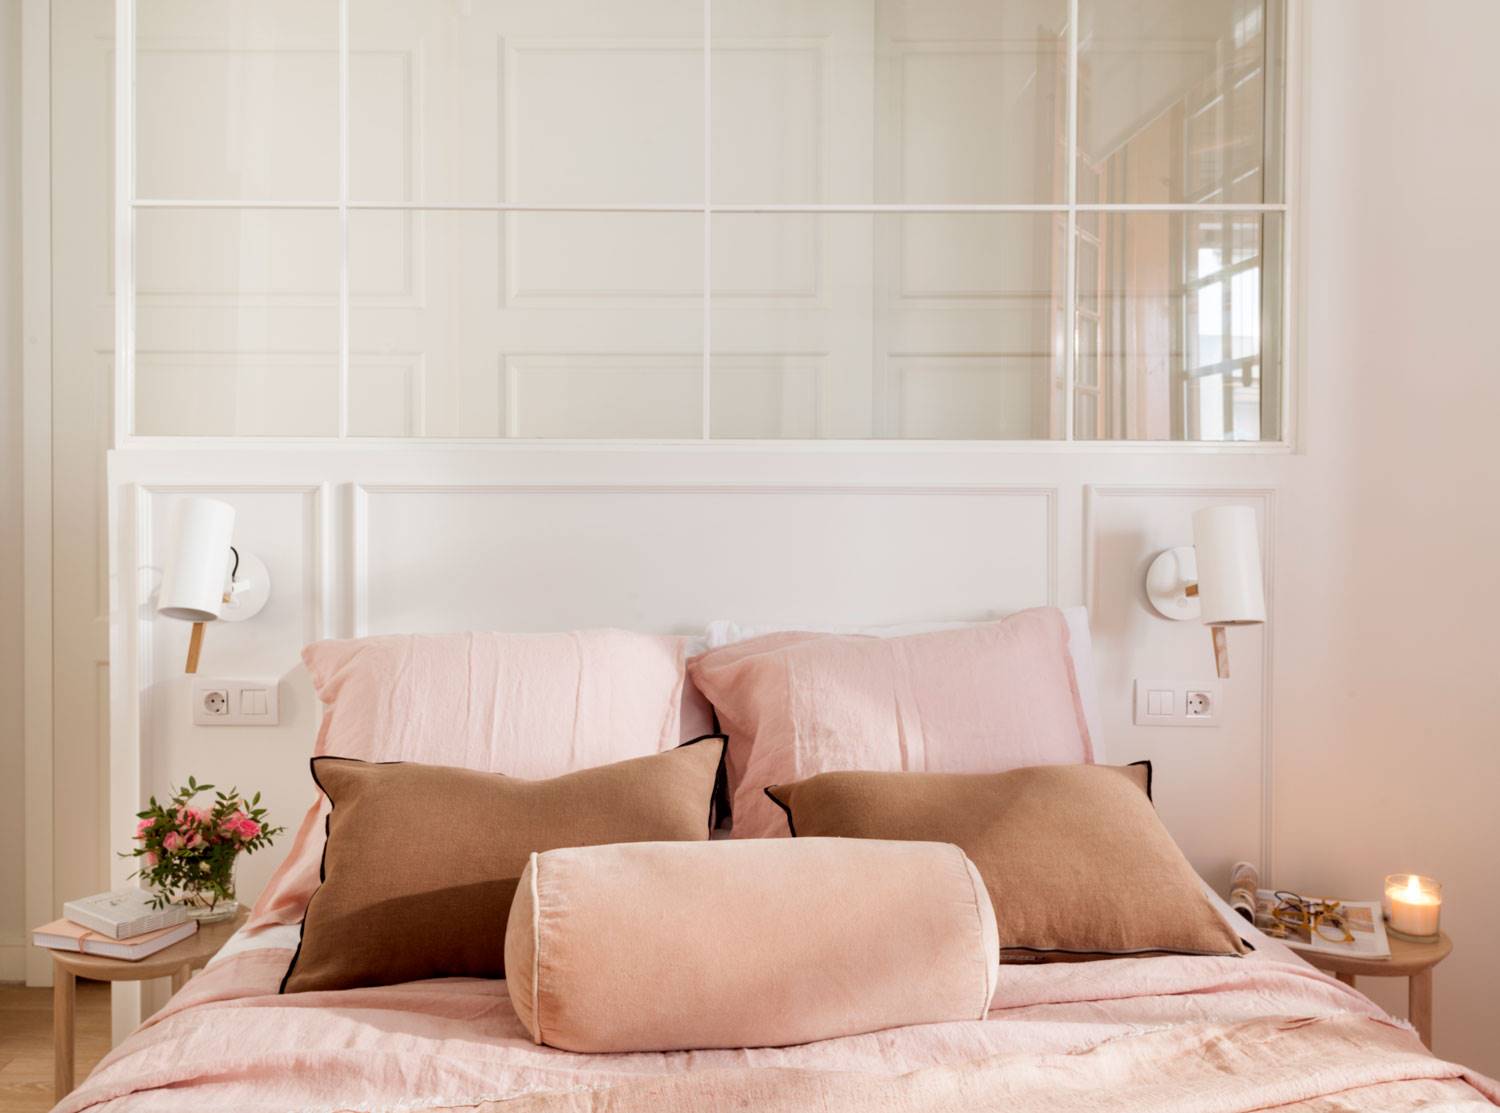 Dormitorio decorado en tonos rosas con cabecero de cristal